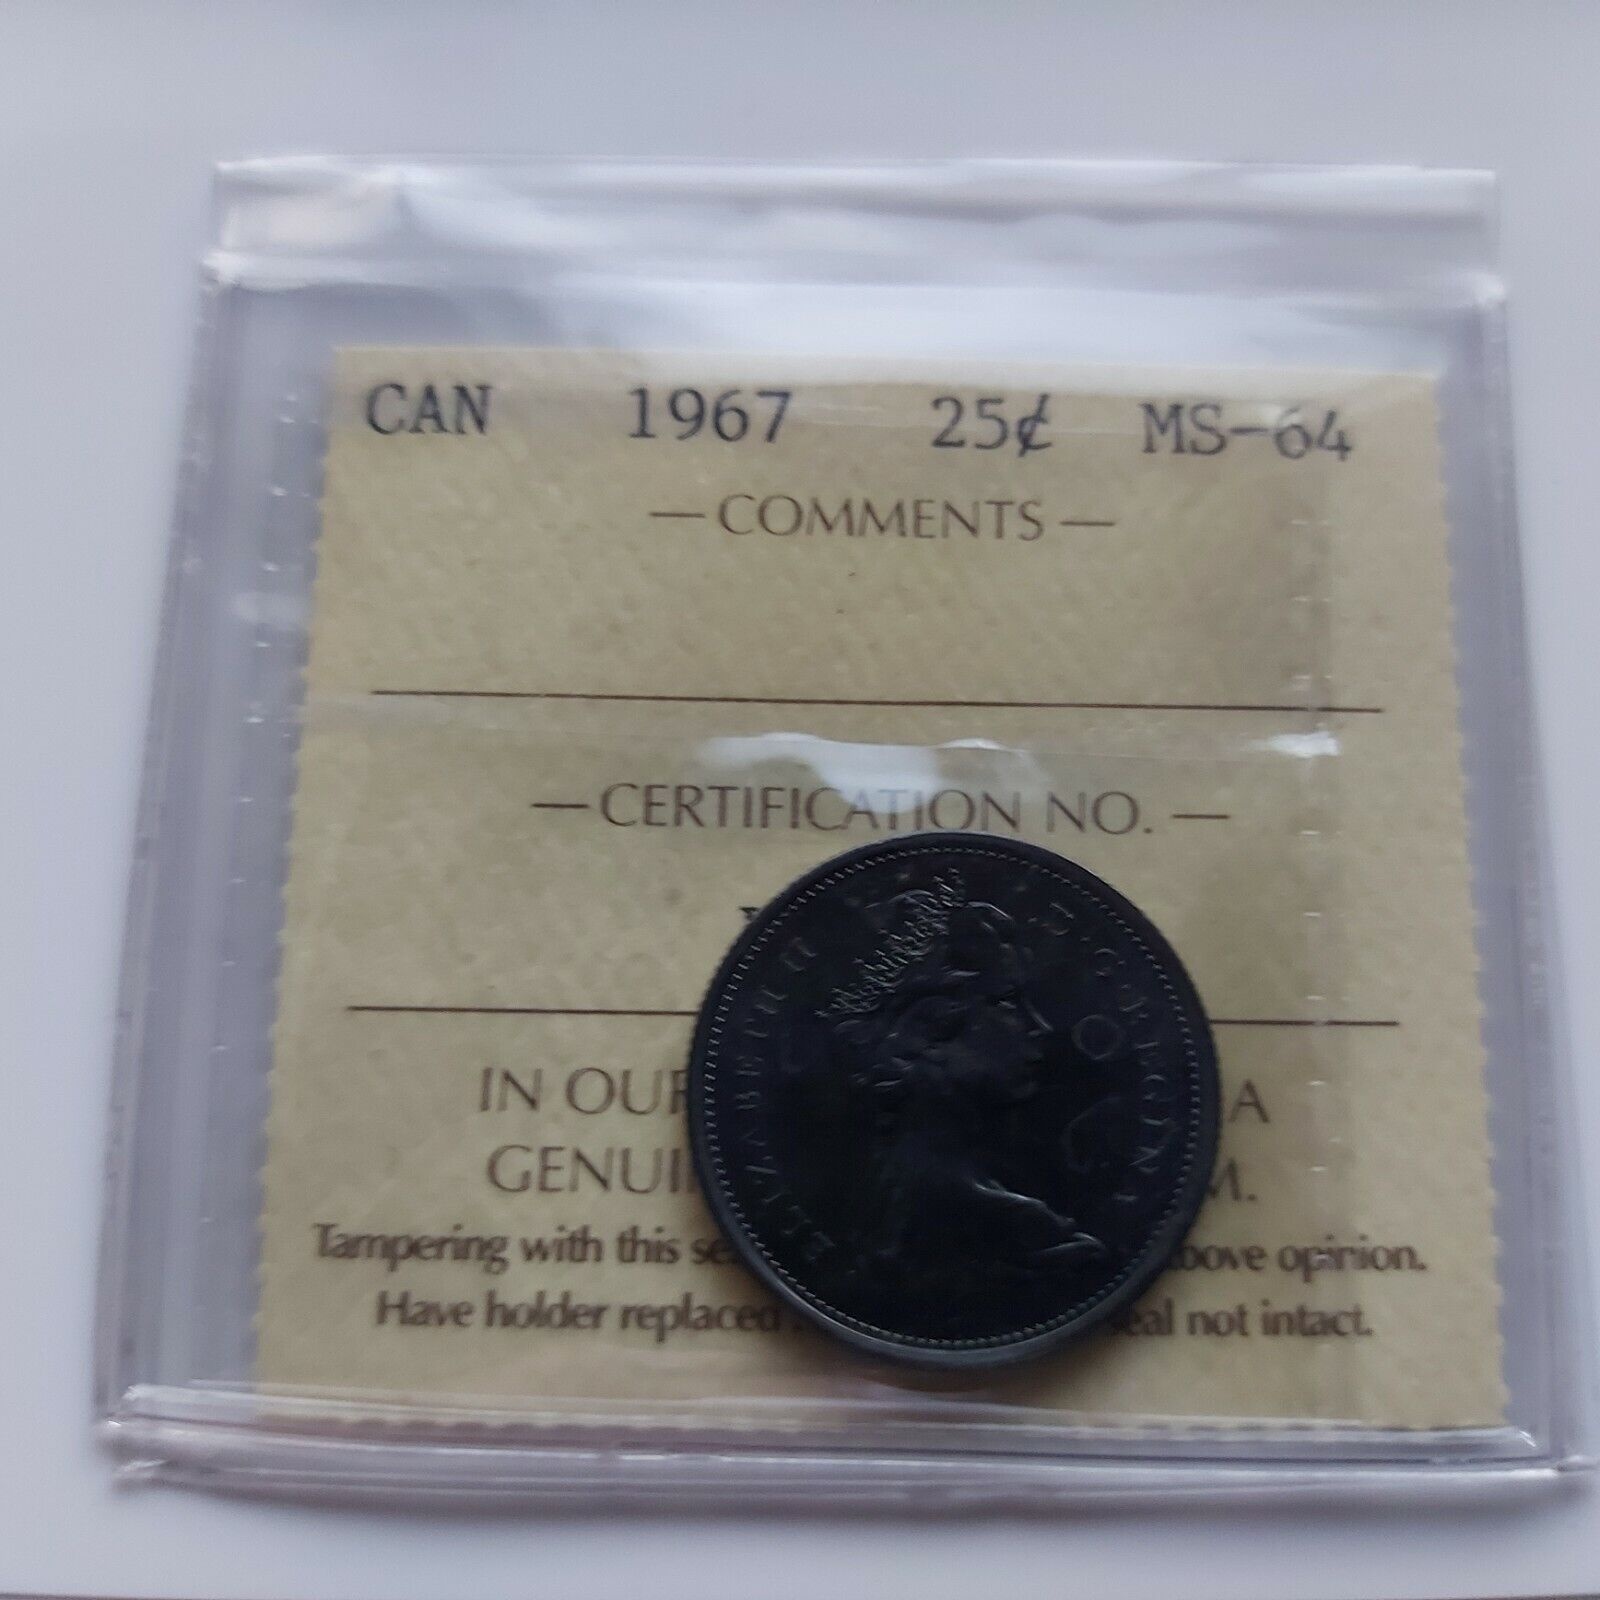  アンティークコイン コイン 金貨 銀貨  [送料無料] 1967 Canadian Quarter MS64 オープニング 大放出セール